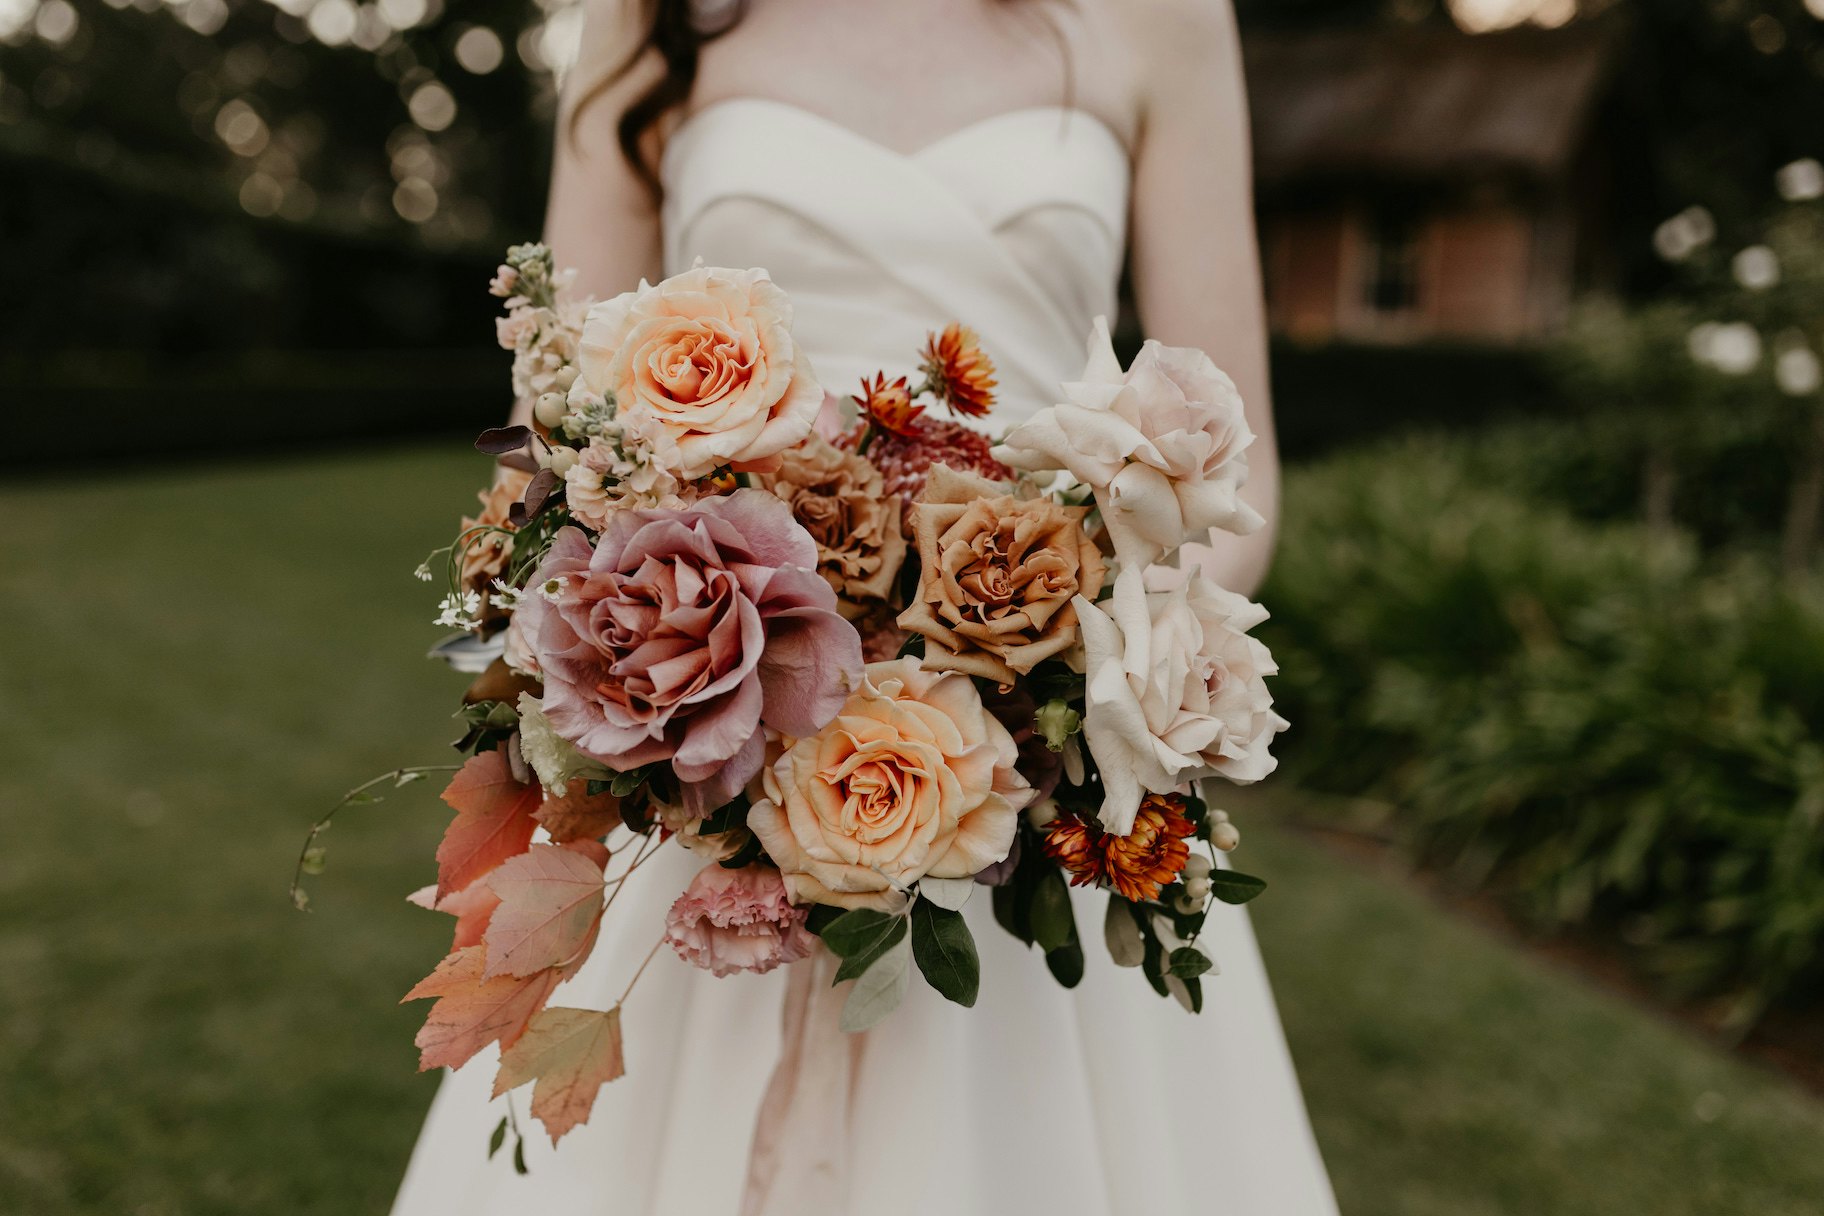 Bride holding bouquet